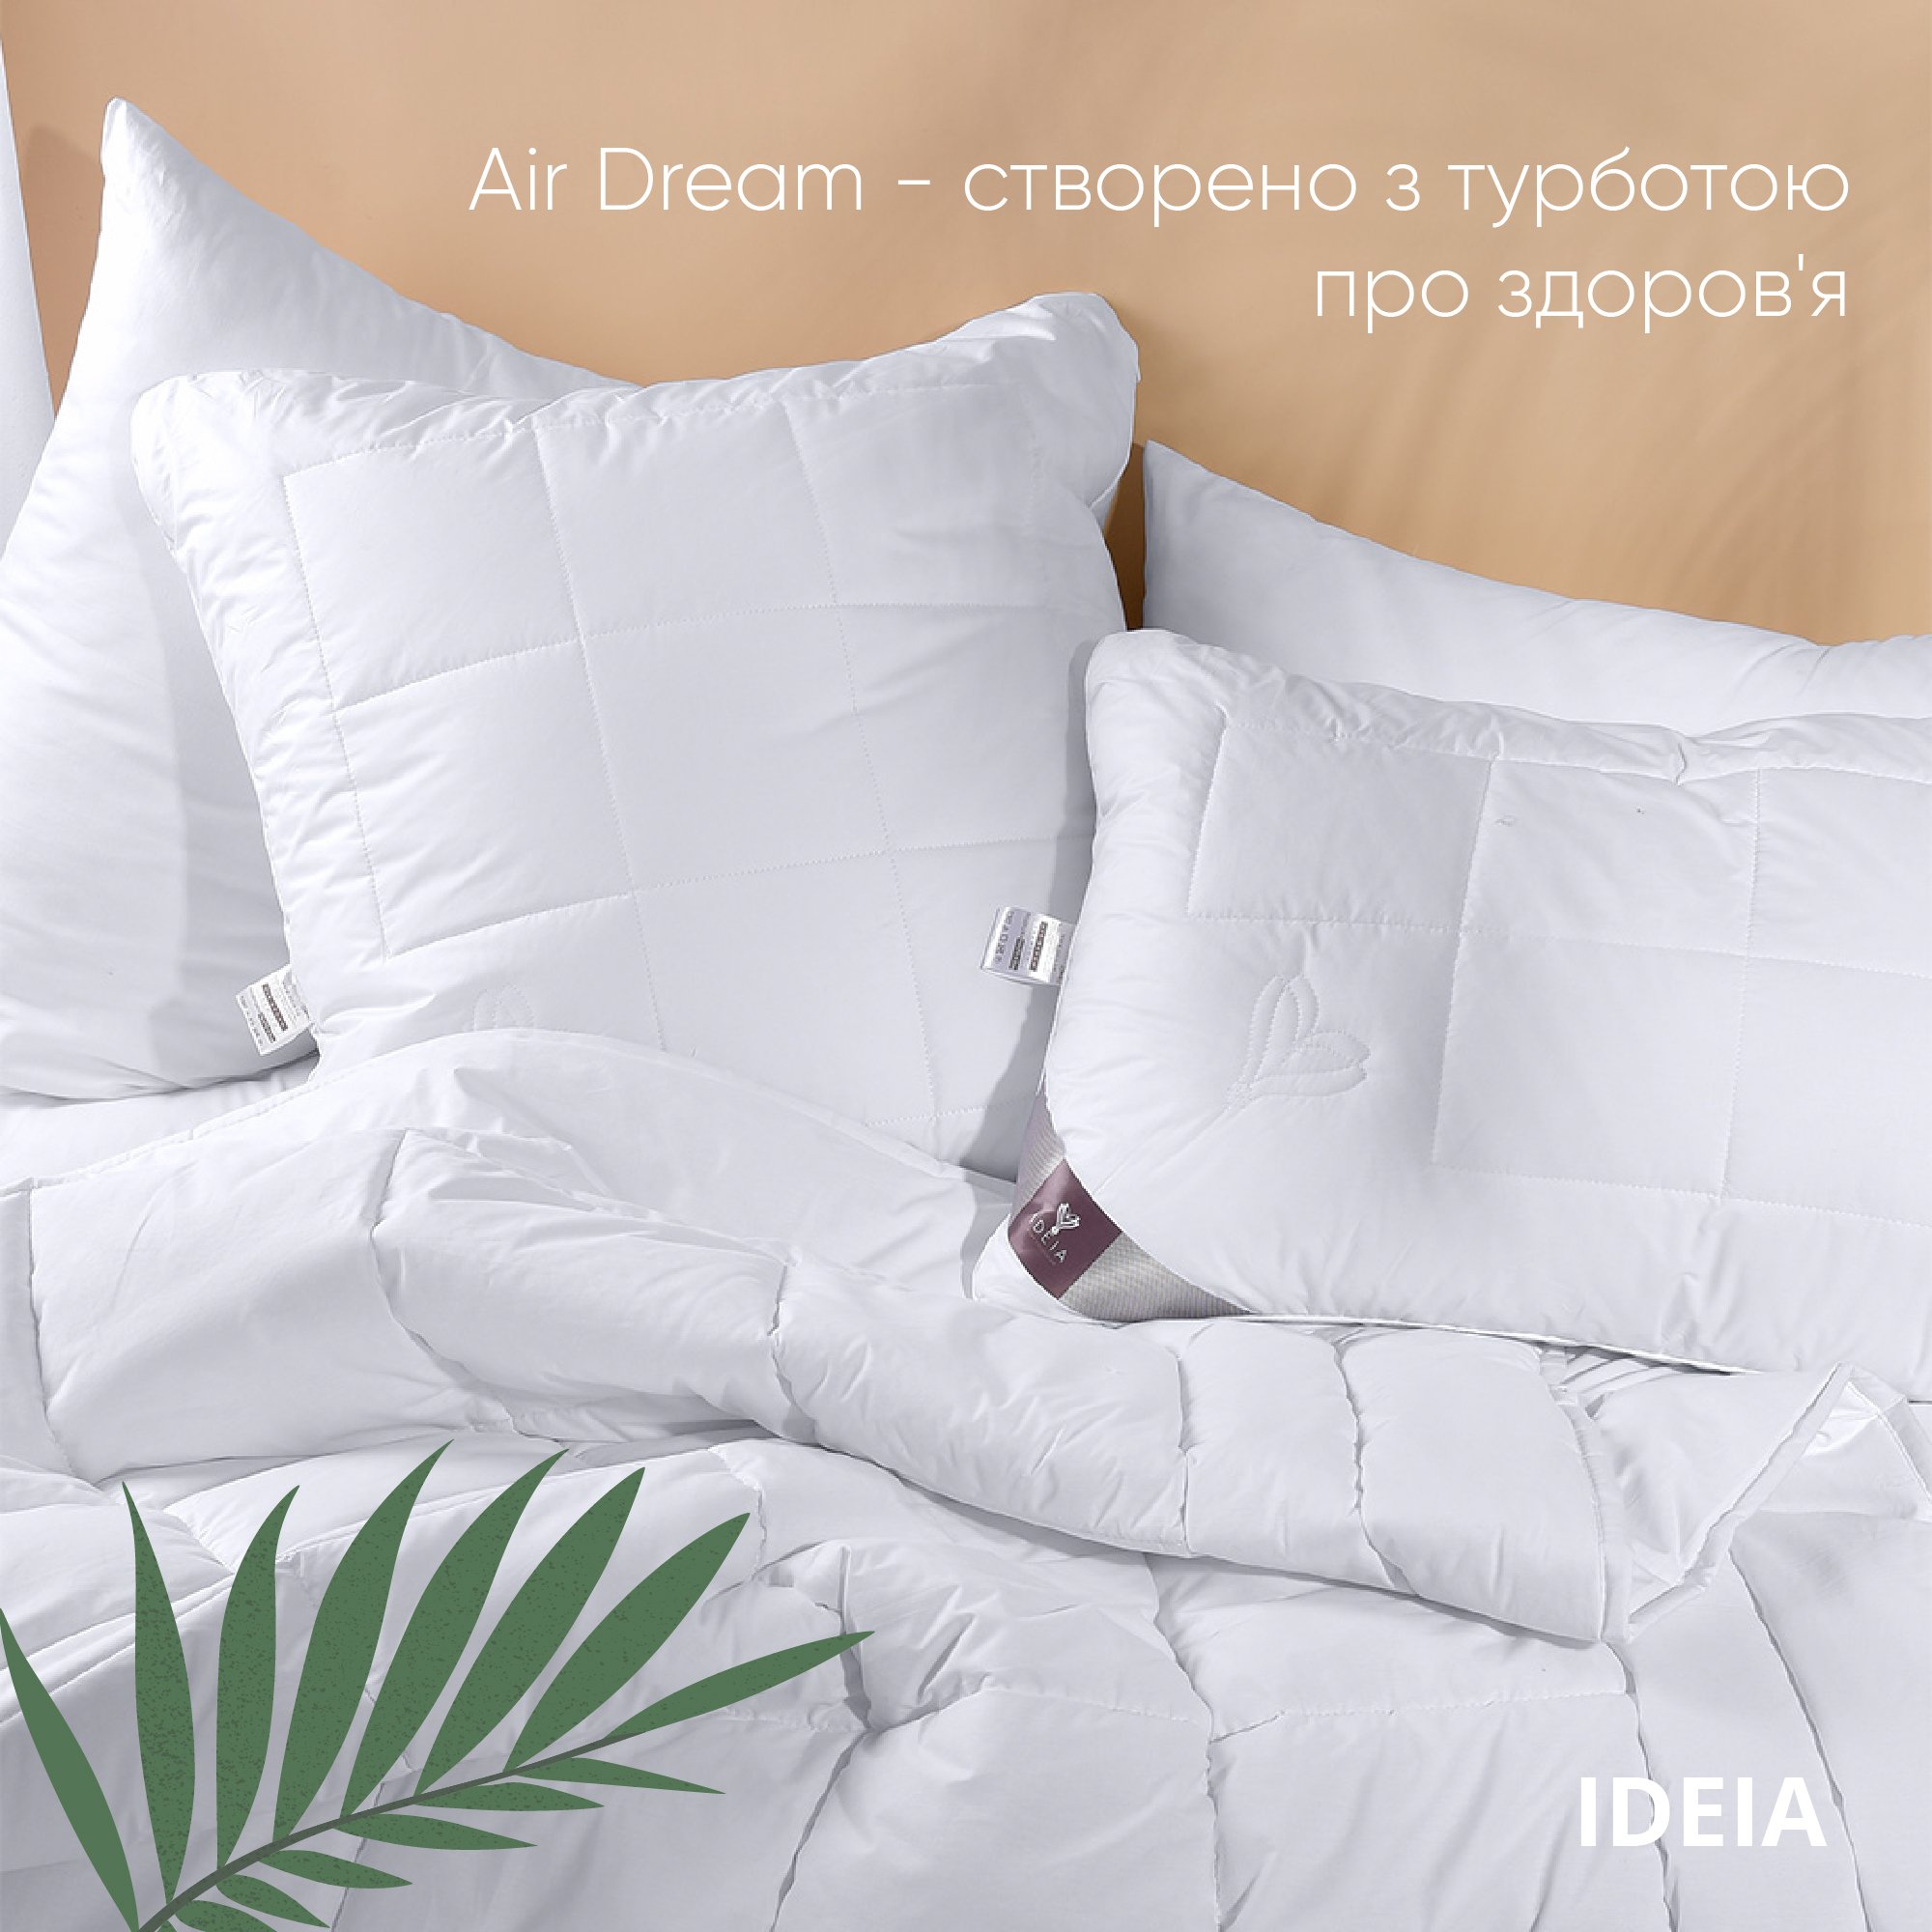 Одеяло Ideia Air Dream Premium летнее, 210х175, белый (8-11697) - фото 6